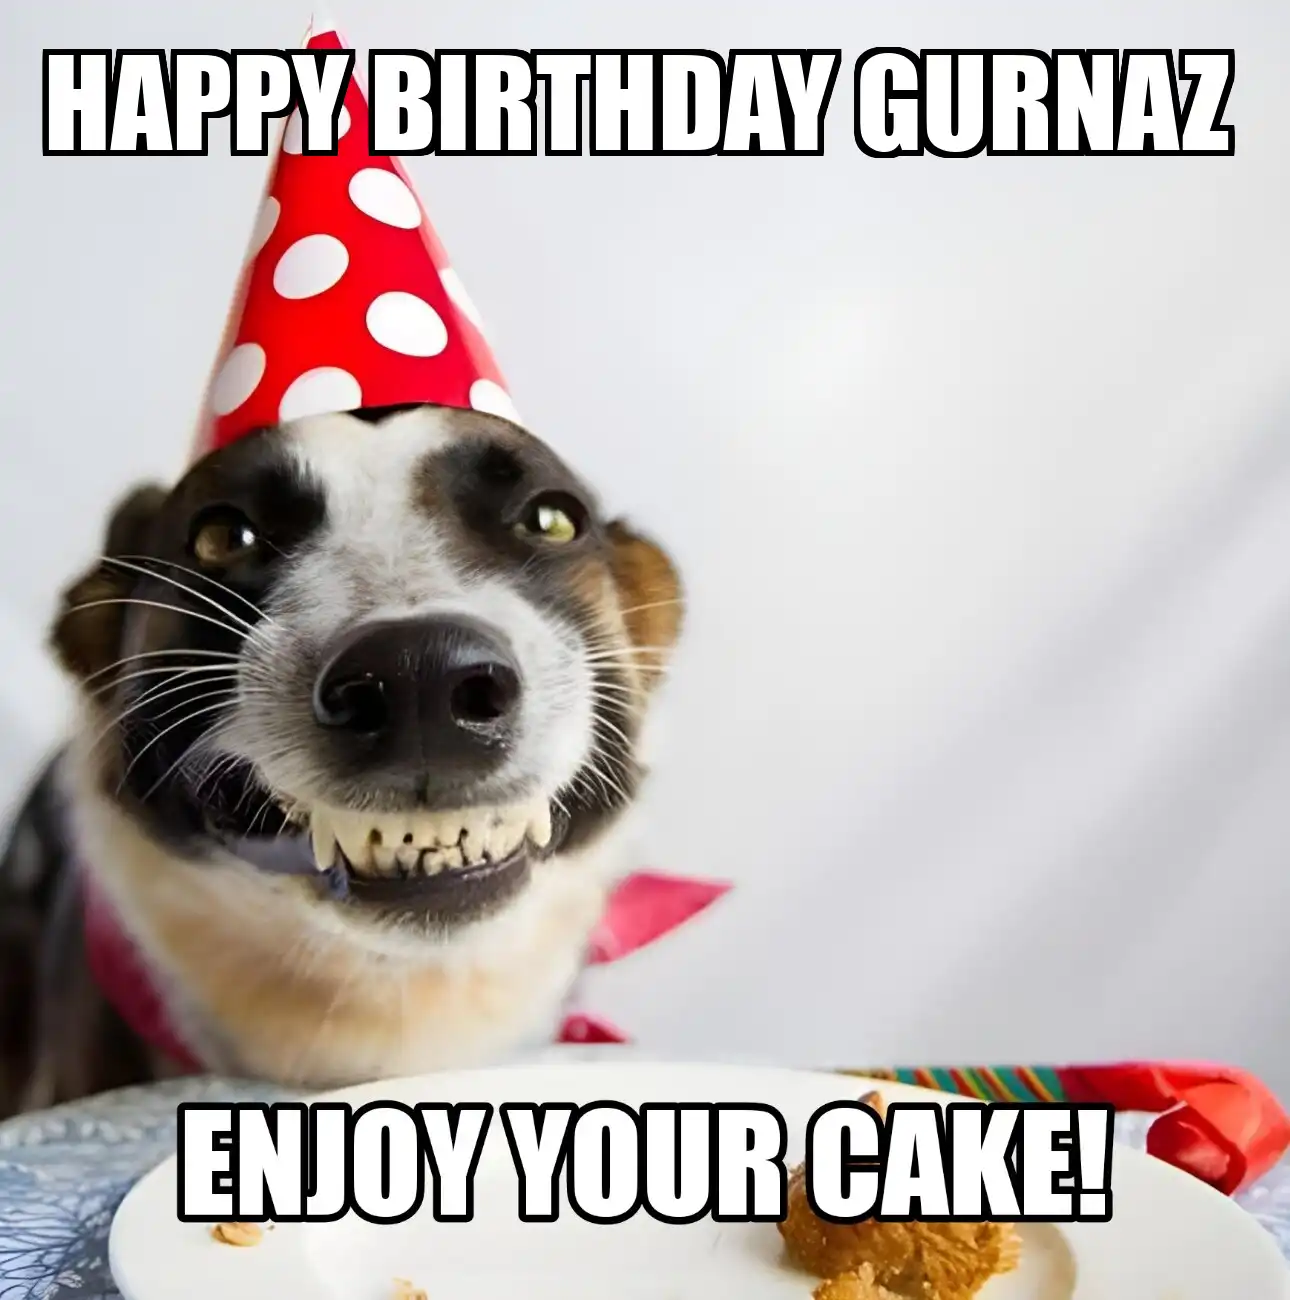 Happy Birthday Gurnaz Enjoy Your Cake Dog Meme